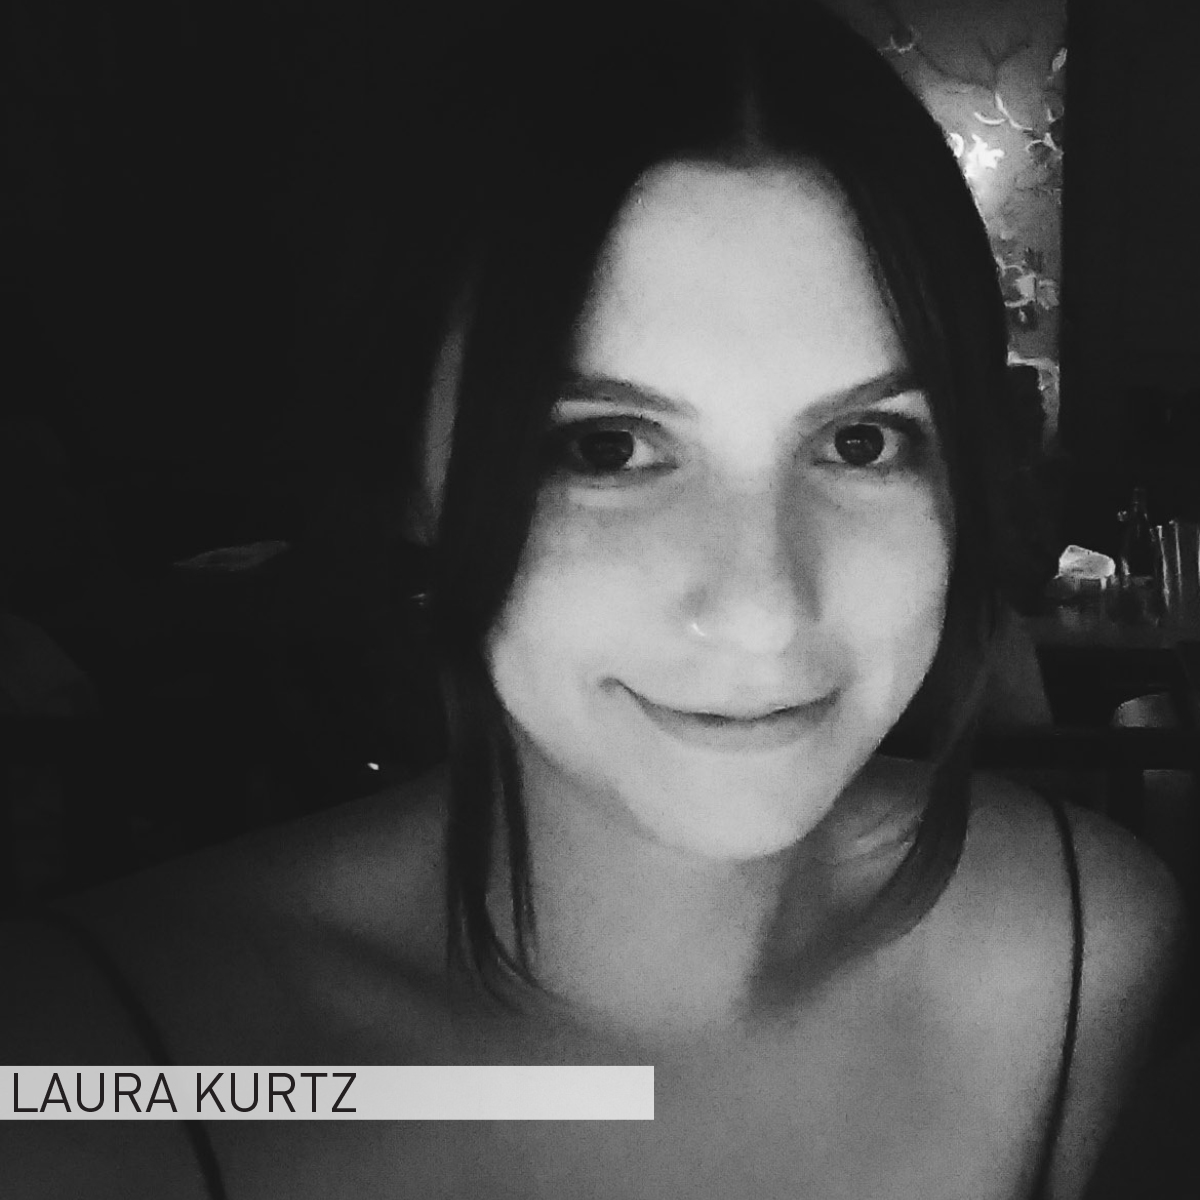 Laura Kurtz